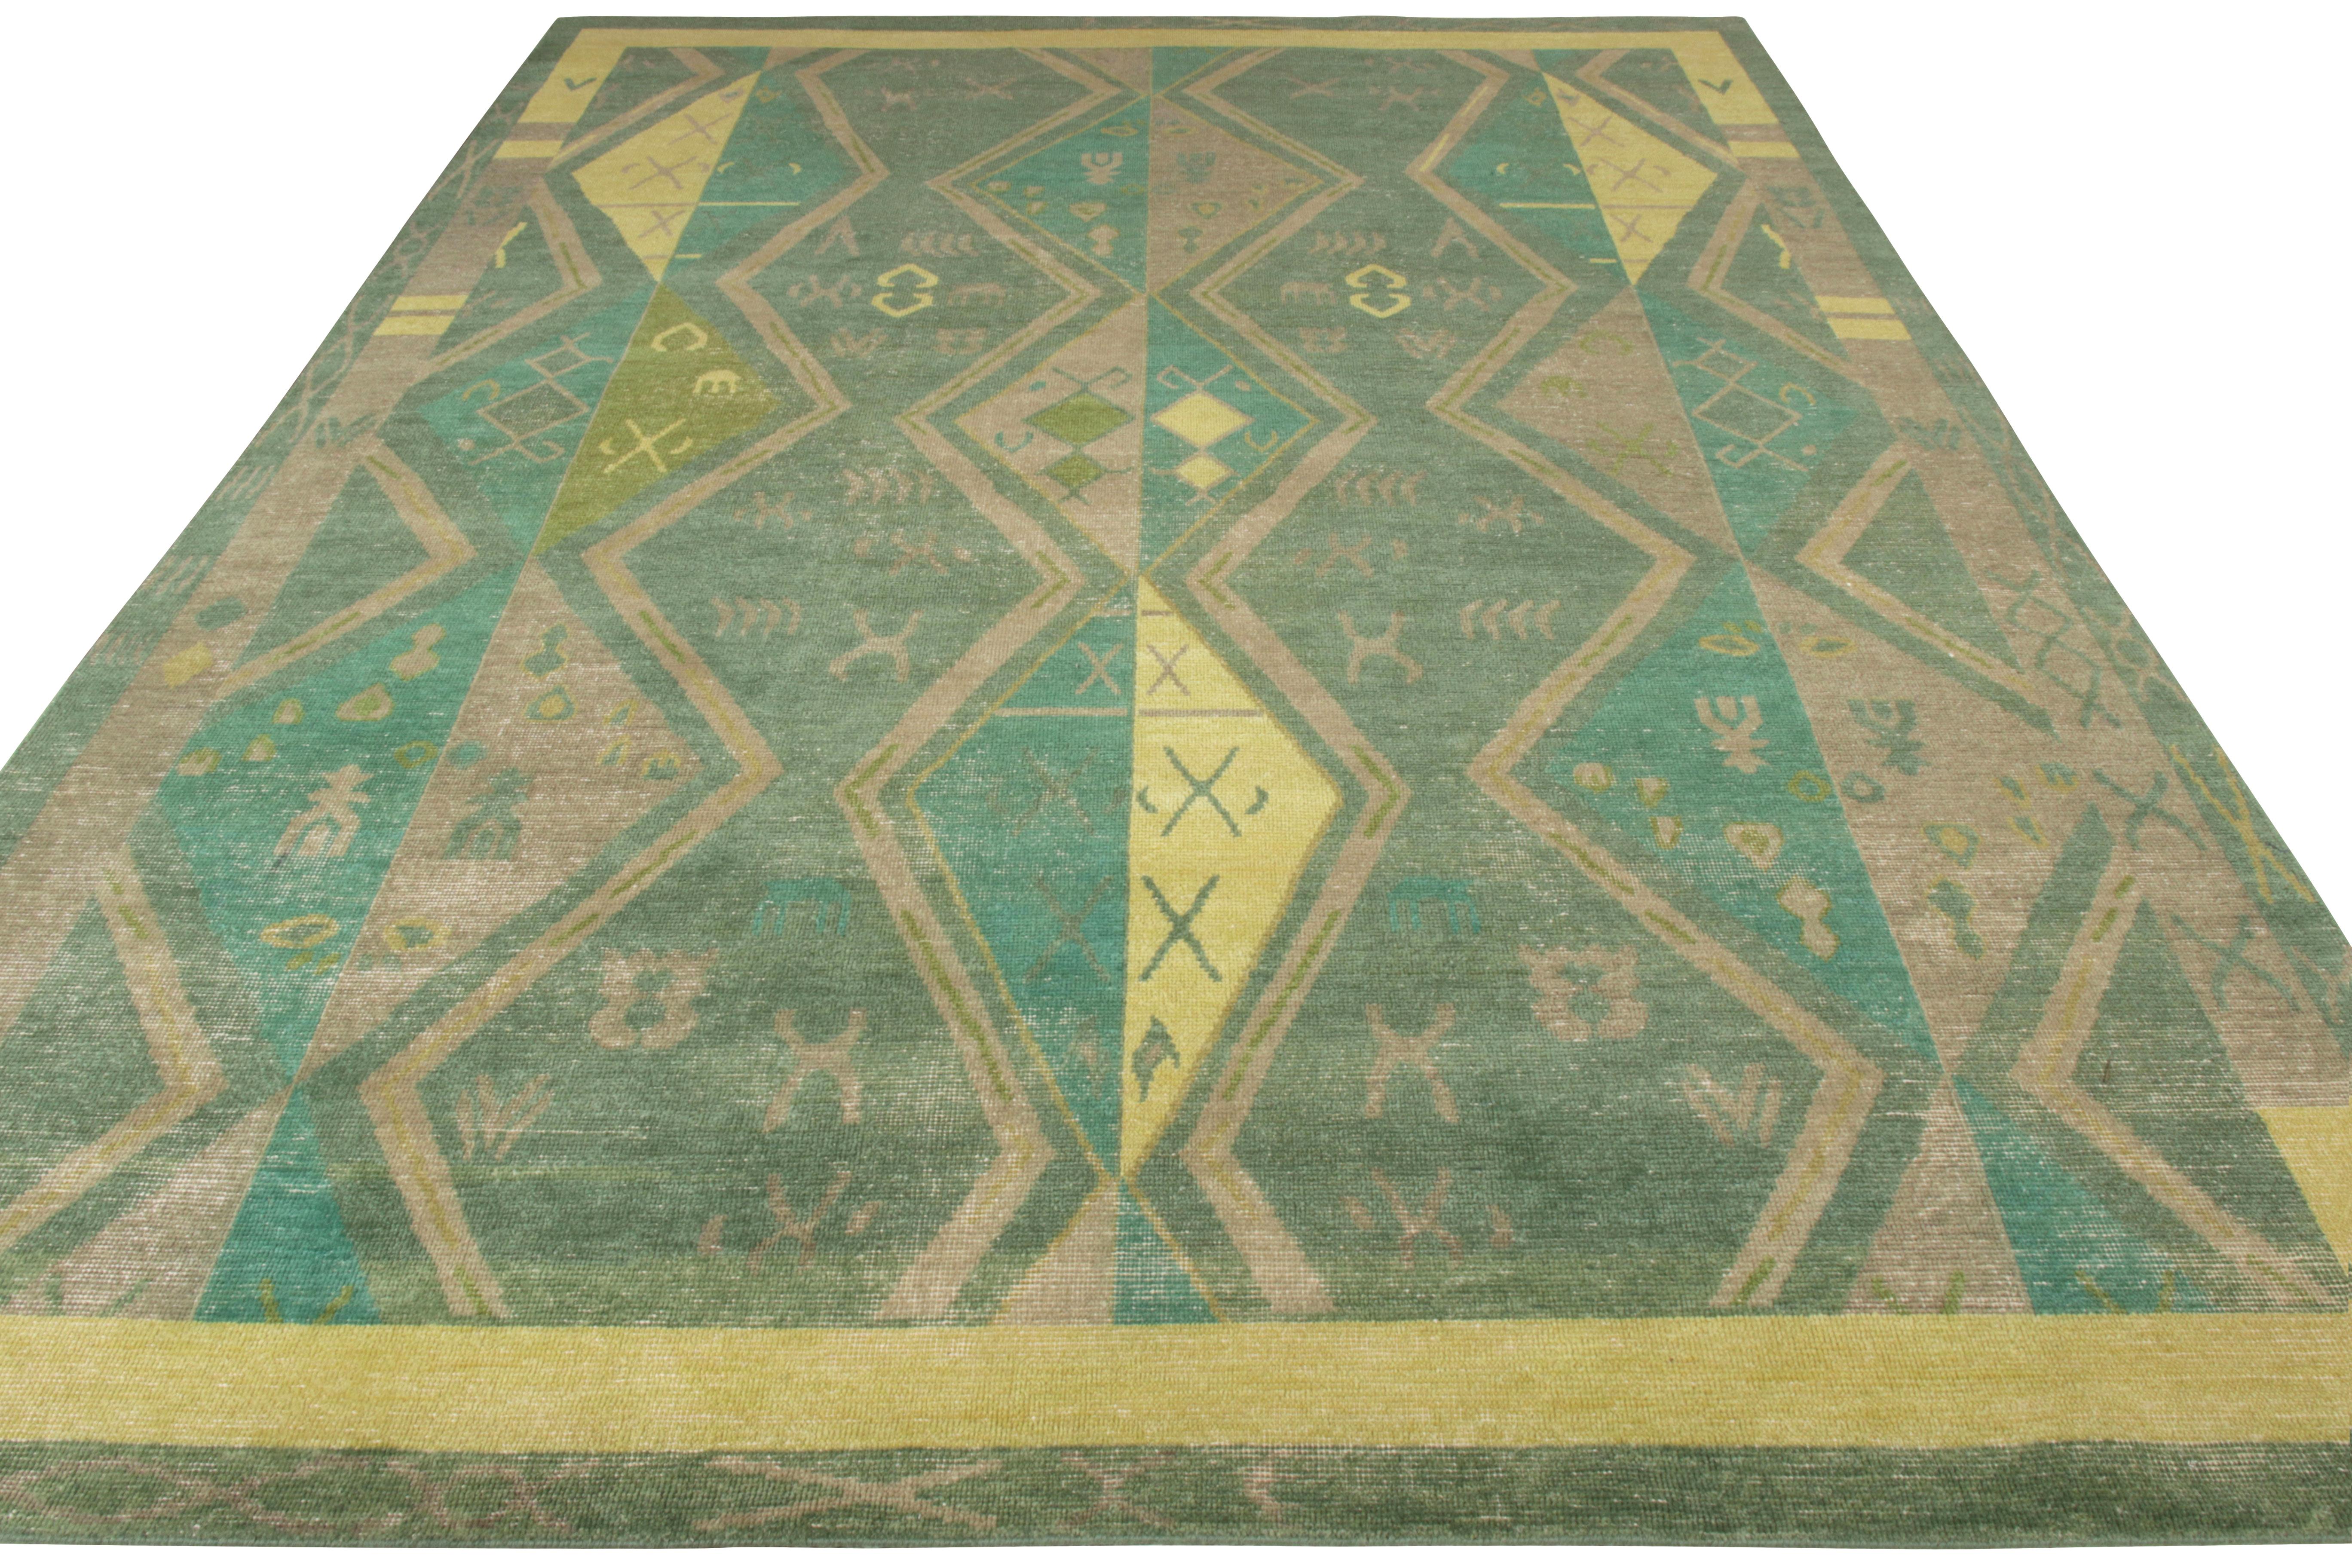 Rug & Kilim accueille ce tapis 9 x 12 de style vieilli dans sa collection Homage. Suivant un motif géométrique tribal, cette beauté en laine nouée à la main offre une vision unique de l'esthétique traditionnelle avec une allure shabby chic. L'emploi